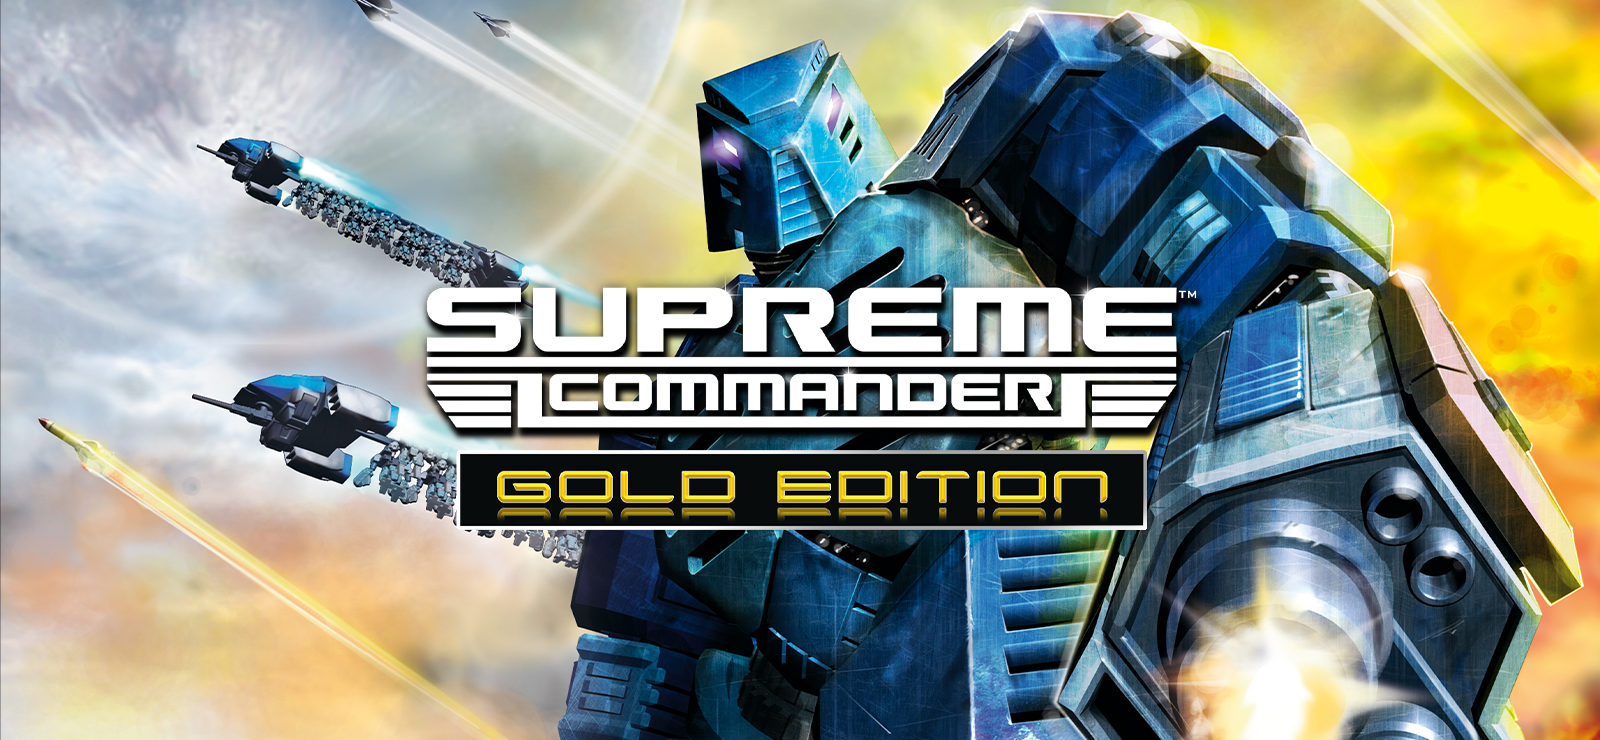 Supreme Commander Gold Edition